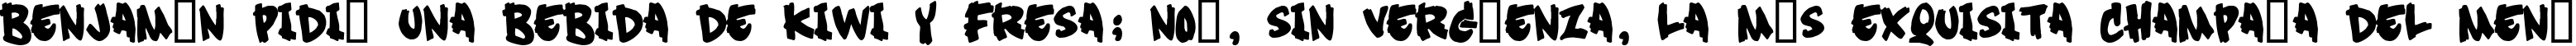 Пример написания шрифтом Soft Sugar [plain] текста на испанском